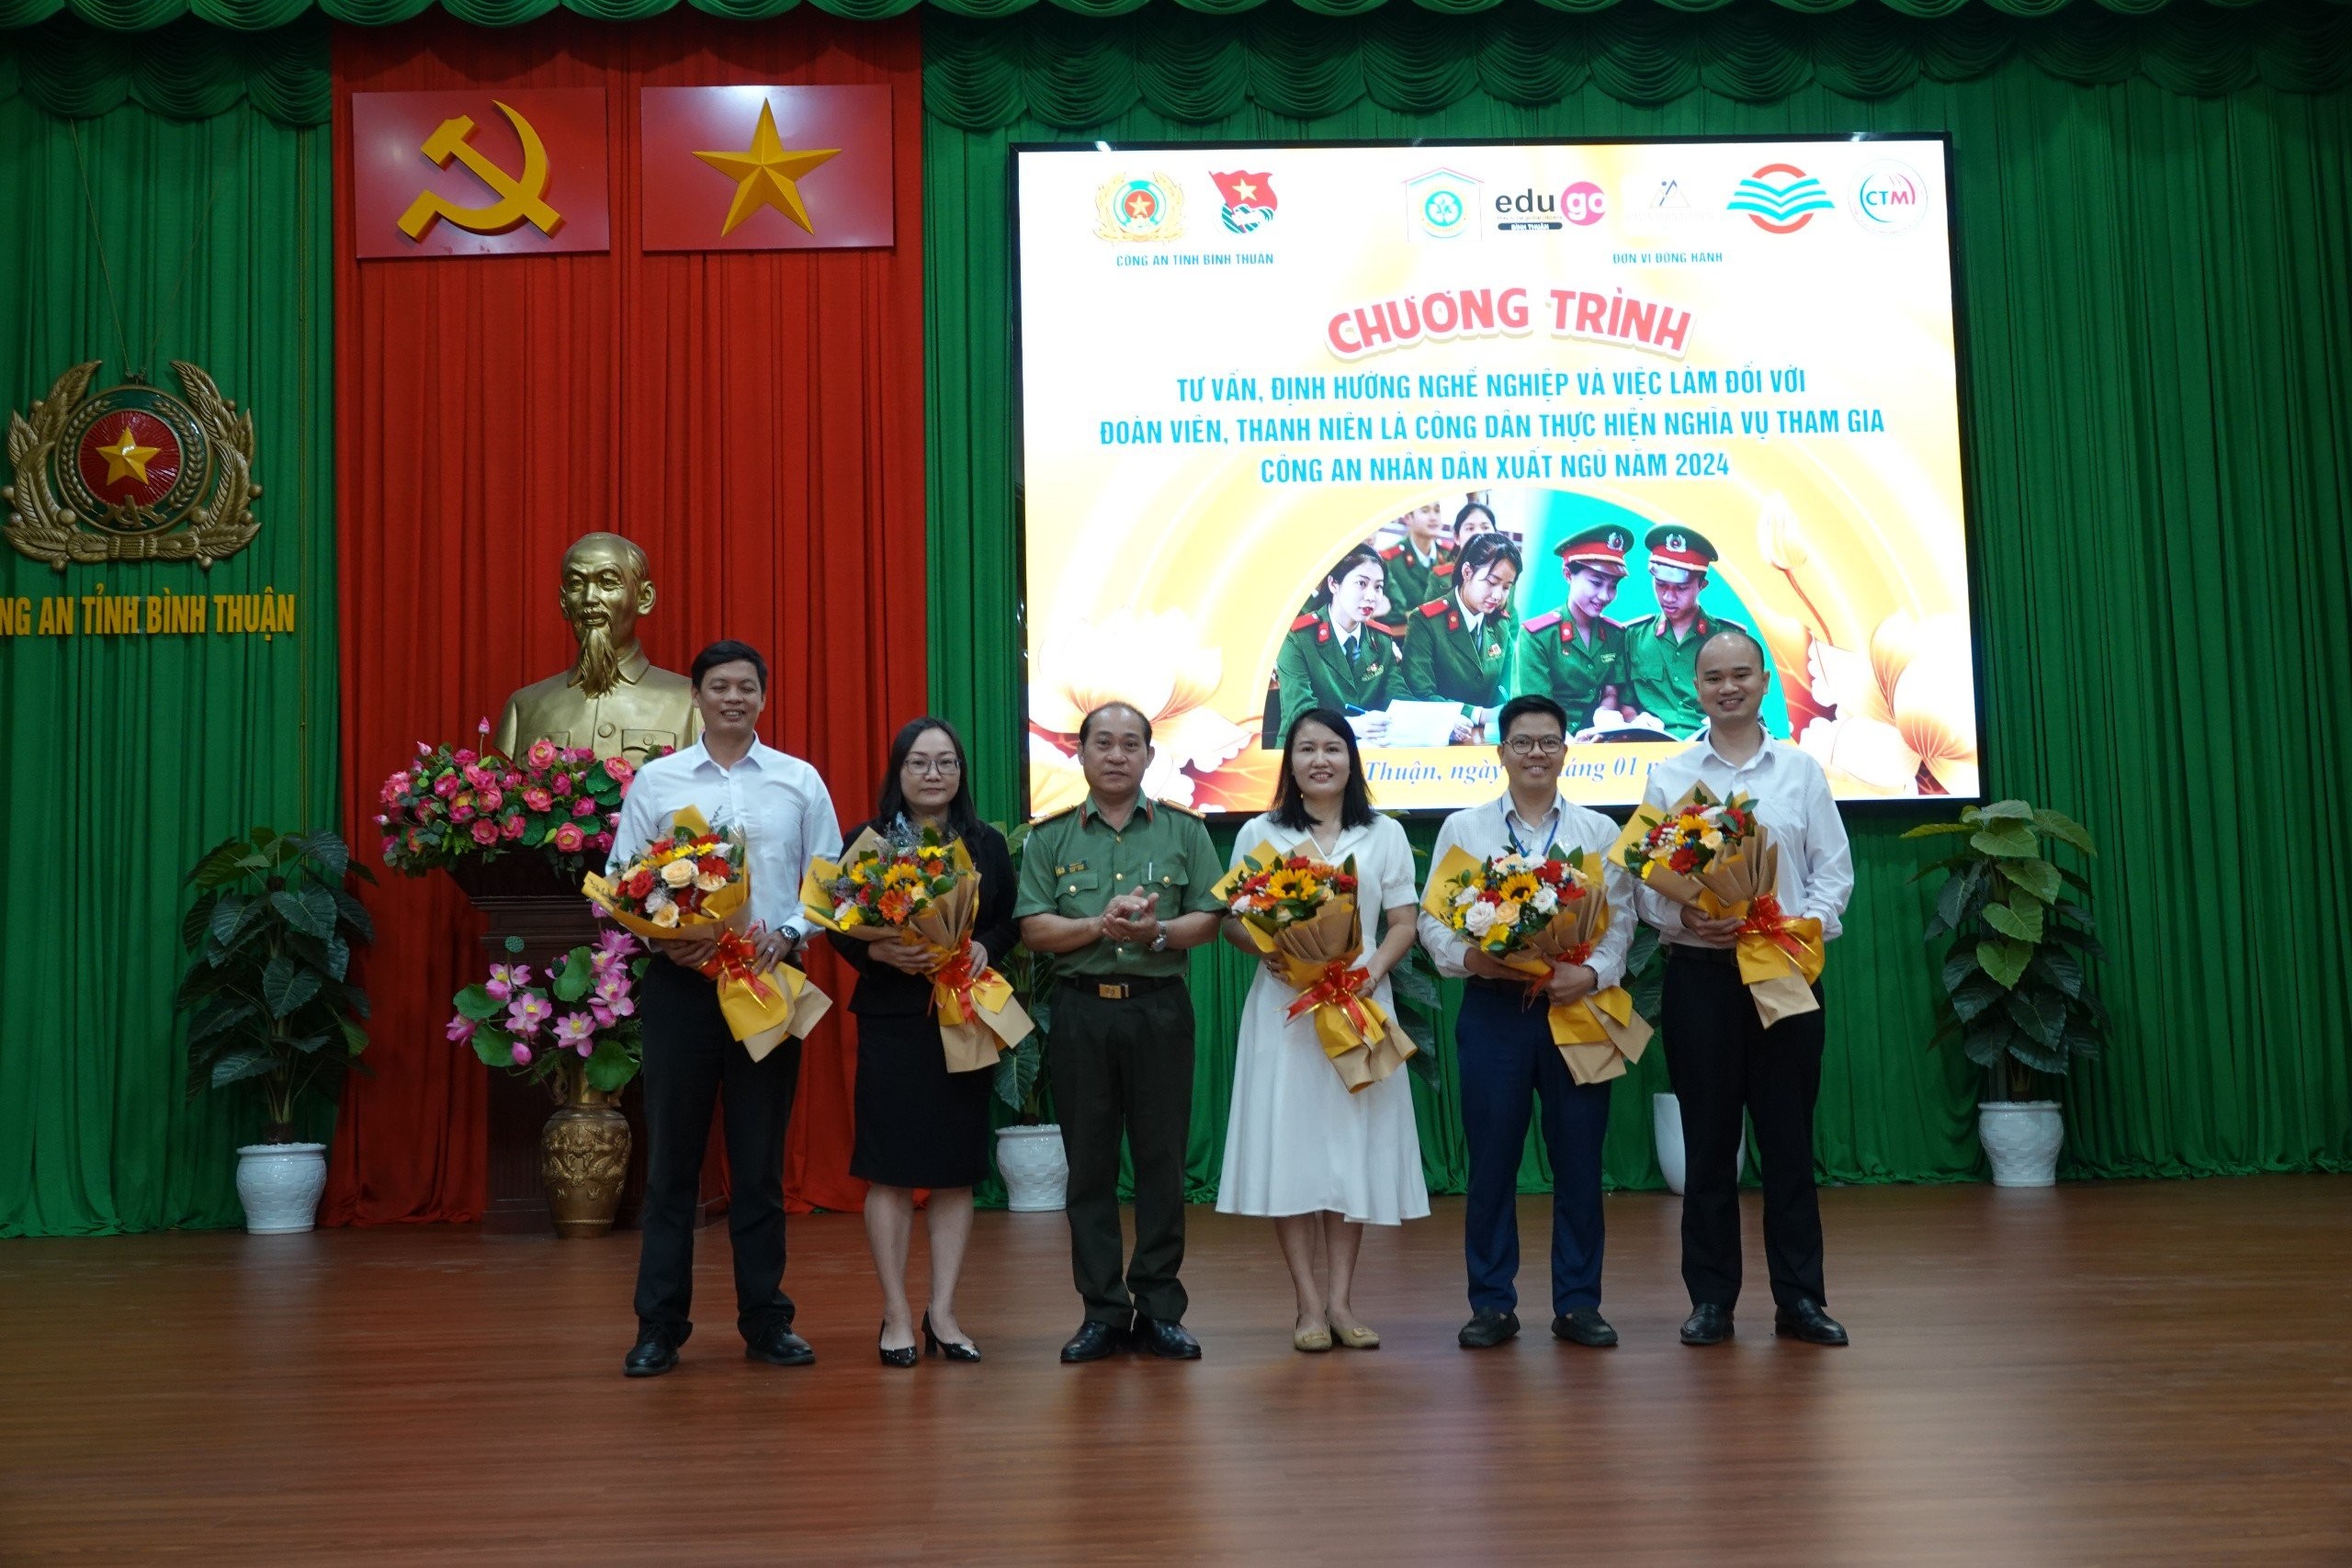 TVPTS Bình Thuận - Tư vấn, định hướng nghề nghiệp cho đoàn viên thanh niên là công dân thực hiện nghĩa vụ tham gia CAND xuất ngũ năm 2024